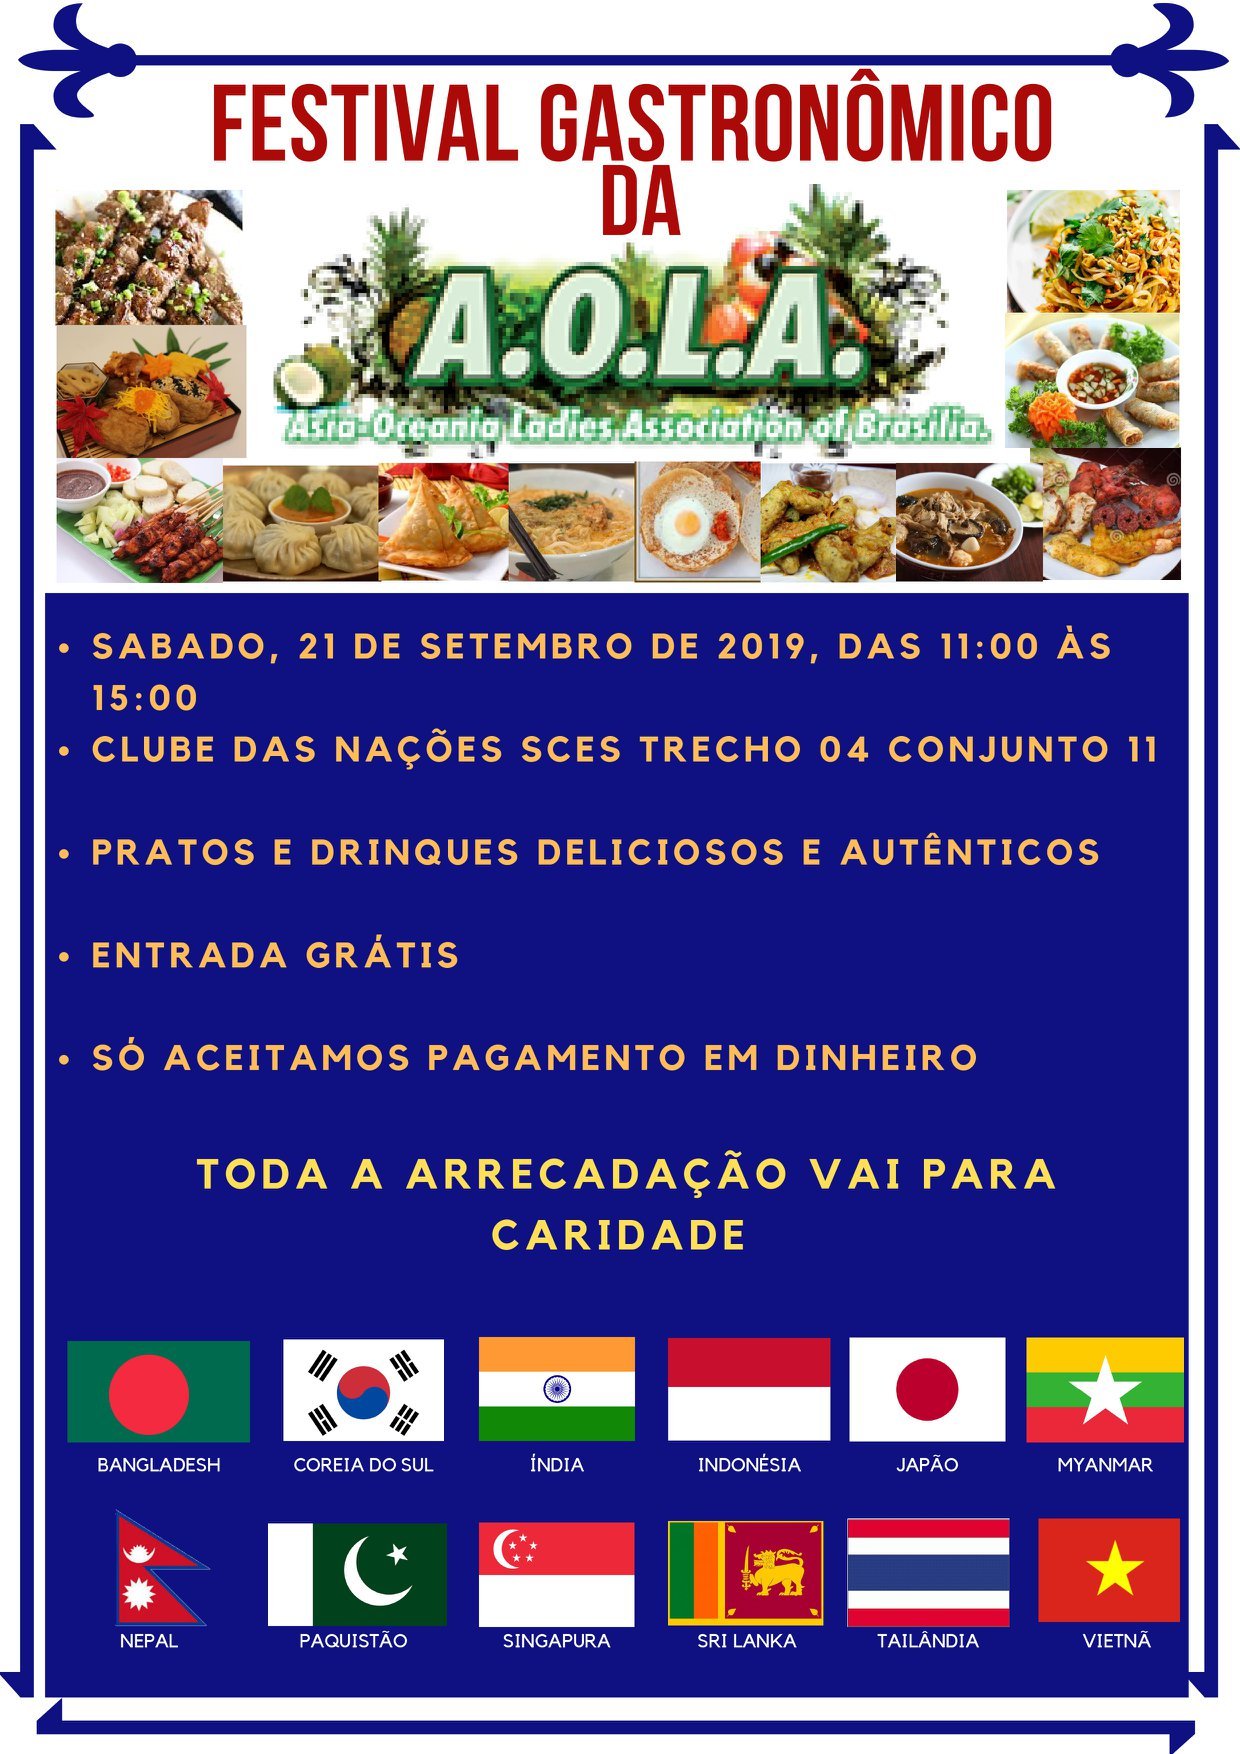 Festival Gastronômico da Associação de Senhoras da Ásia-Oceania (AOLA)